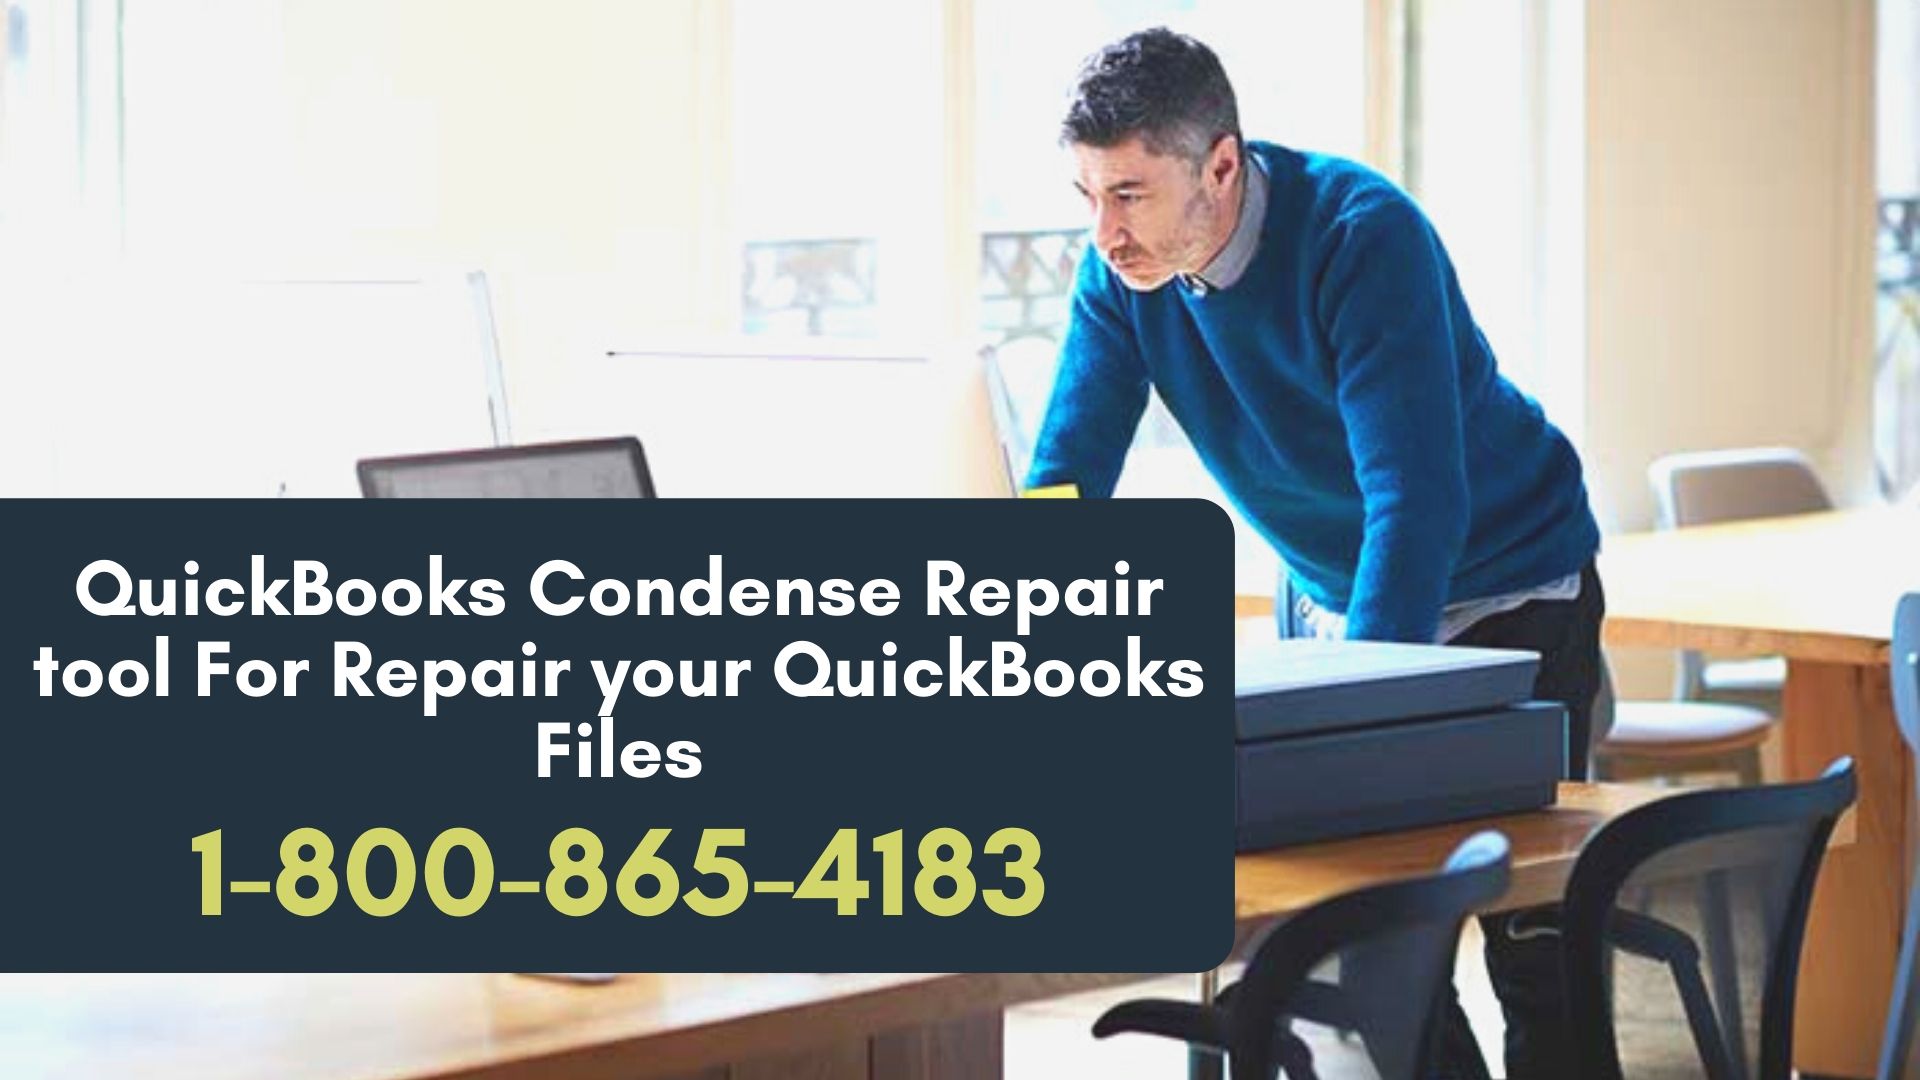 QuickBooks Condense Repair tool